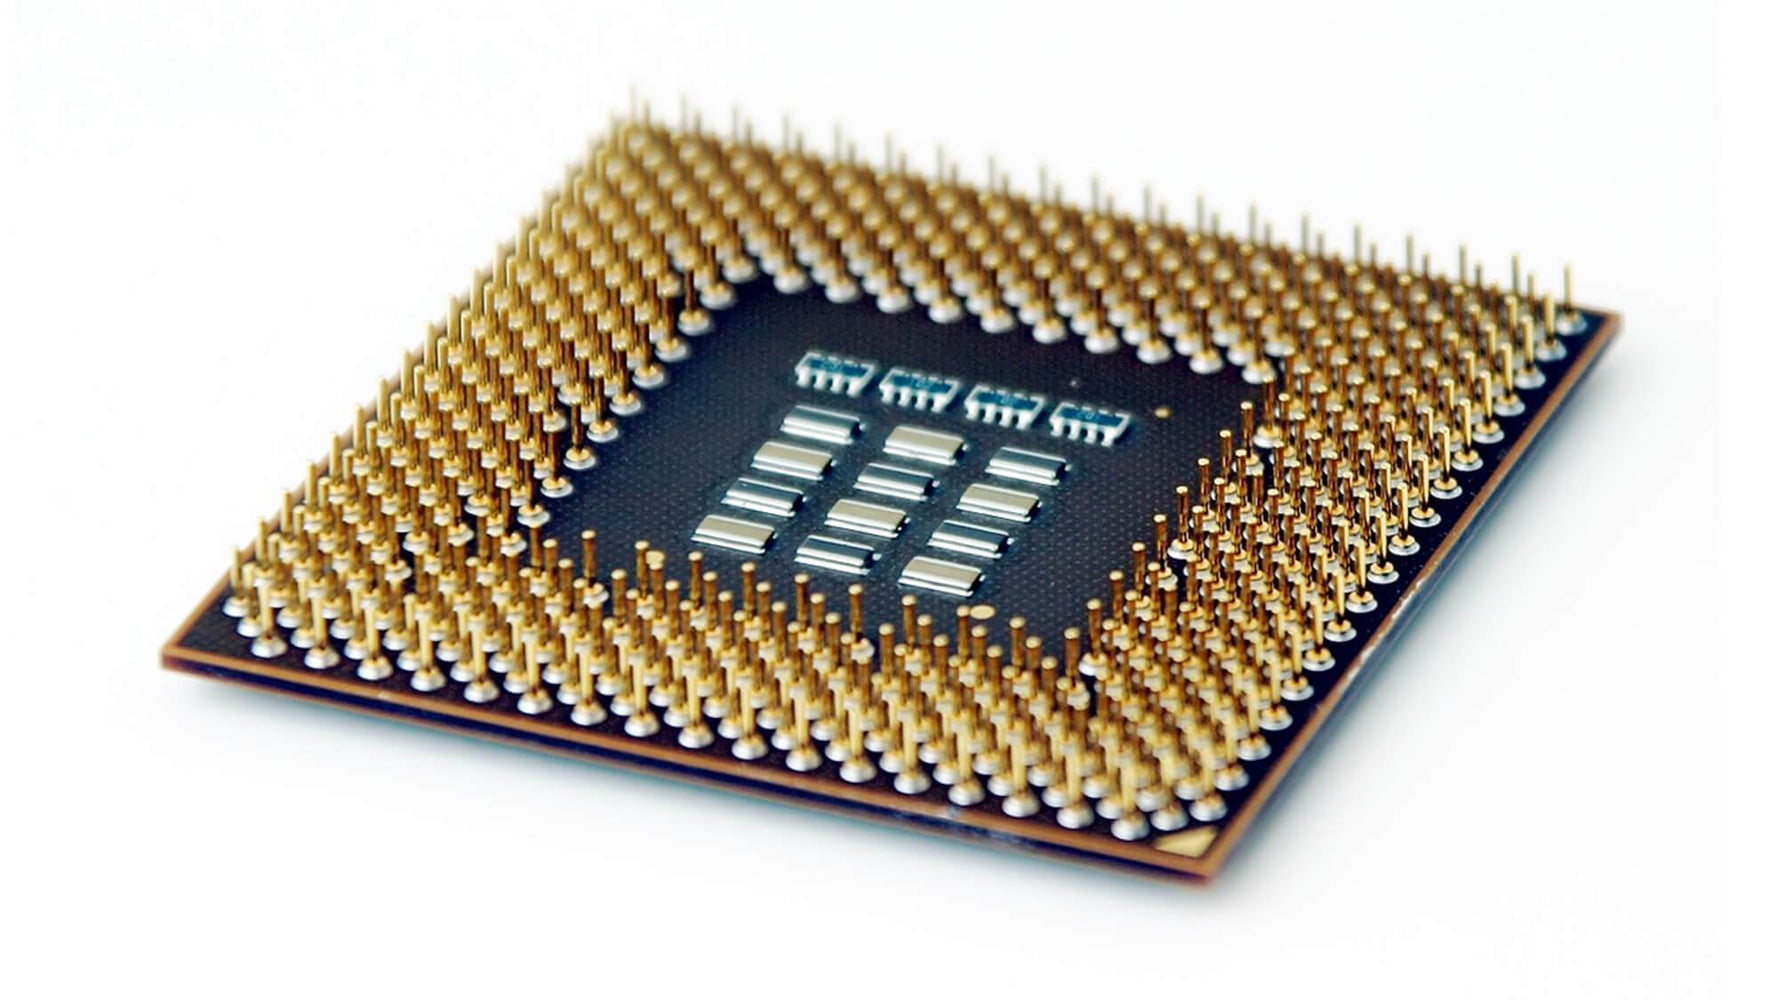 BX80601975 - Intel Core i7-975 Extreme Quad Core 3.33GHz 6.40GT/s QPI 8MB L3 Cache Socket FCLGA1366 Desktop Processor